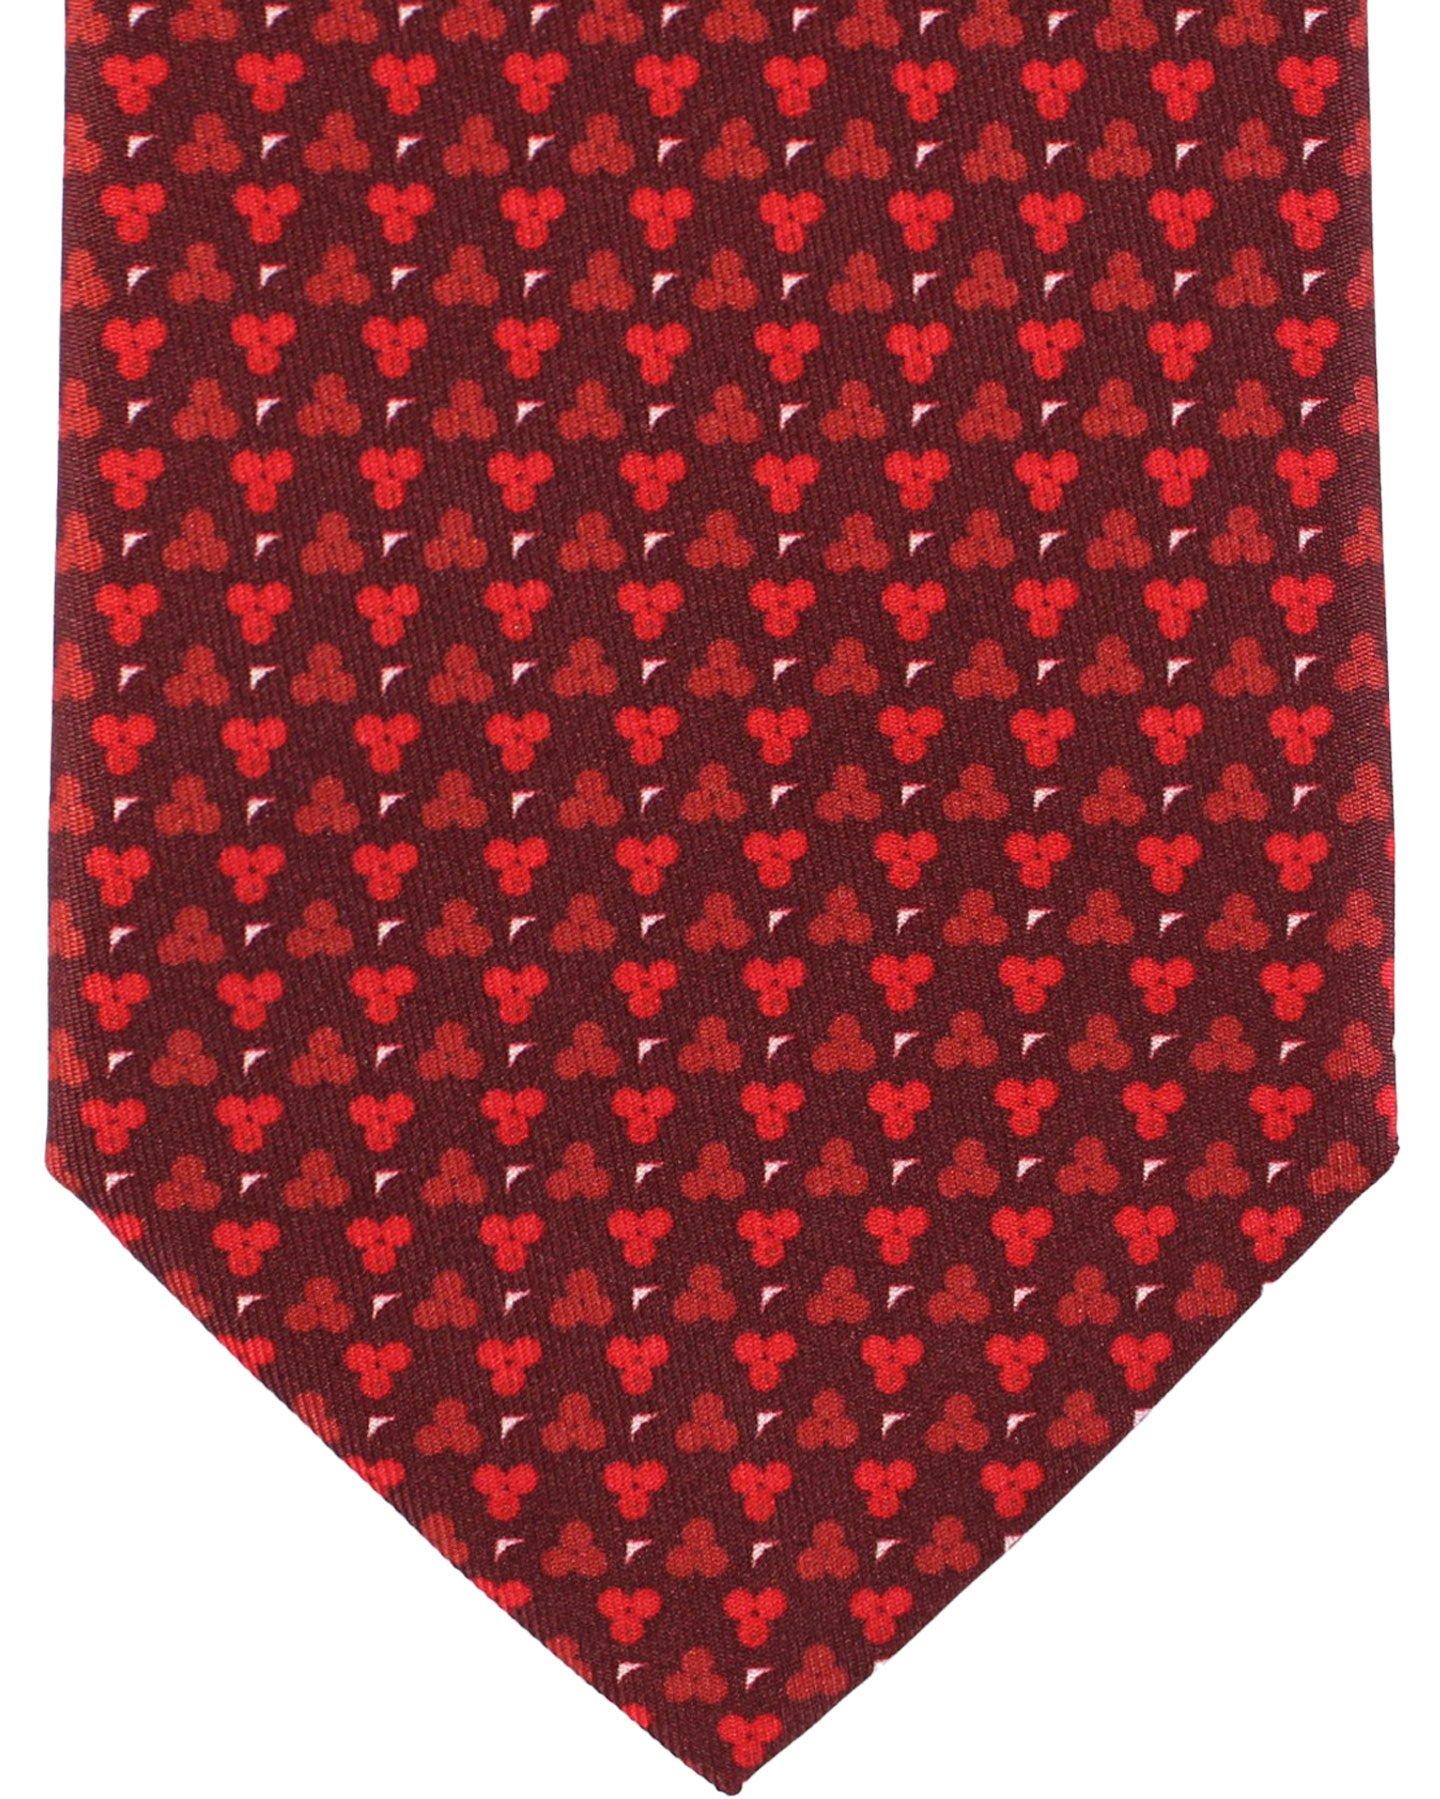 Battistoni Silk Tie Maroon Red Geometric